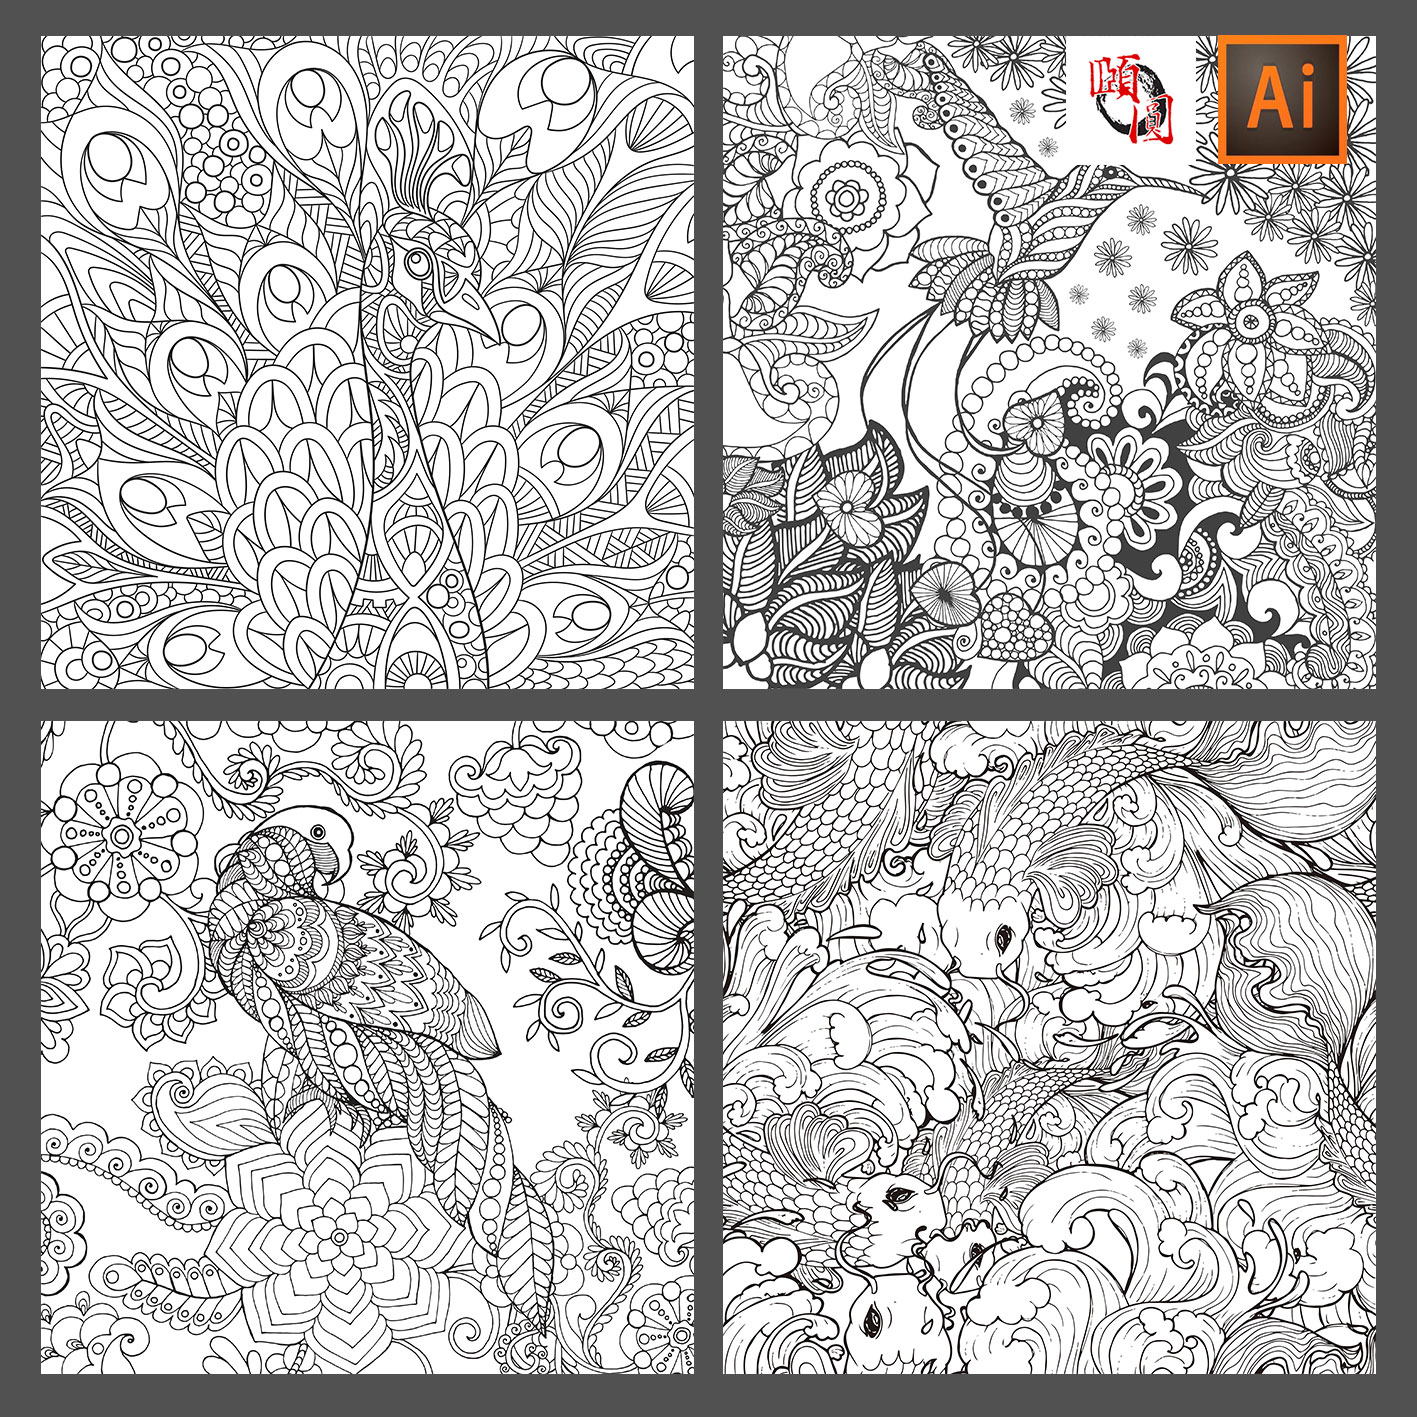 黑白线条线描鲜花树林动物孔雀花纹插画插图装饰画AI矢量设计素材